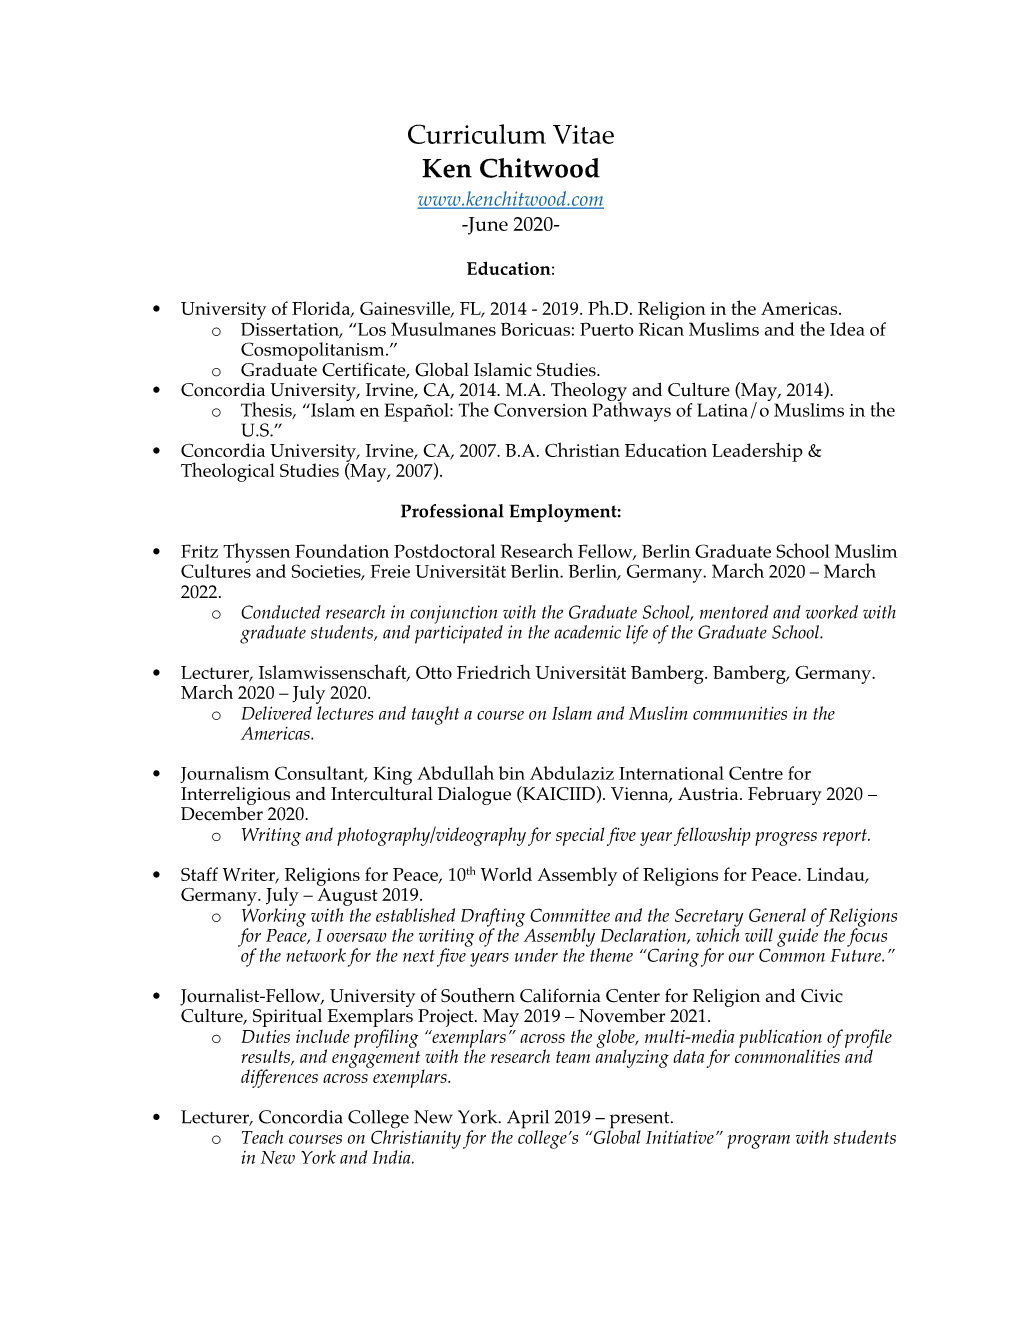 Curriculum Vitae Ken Chitwood -June 2020